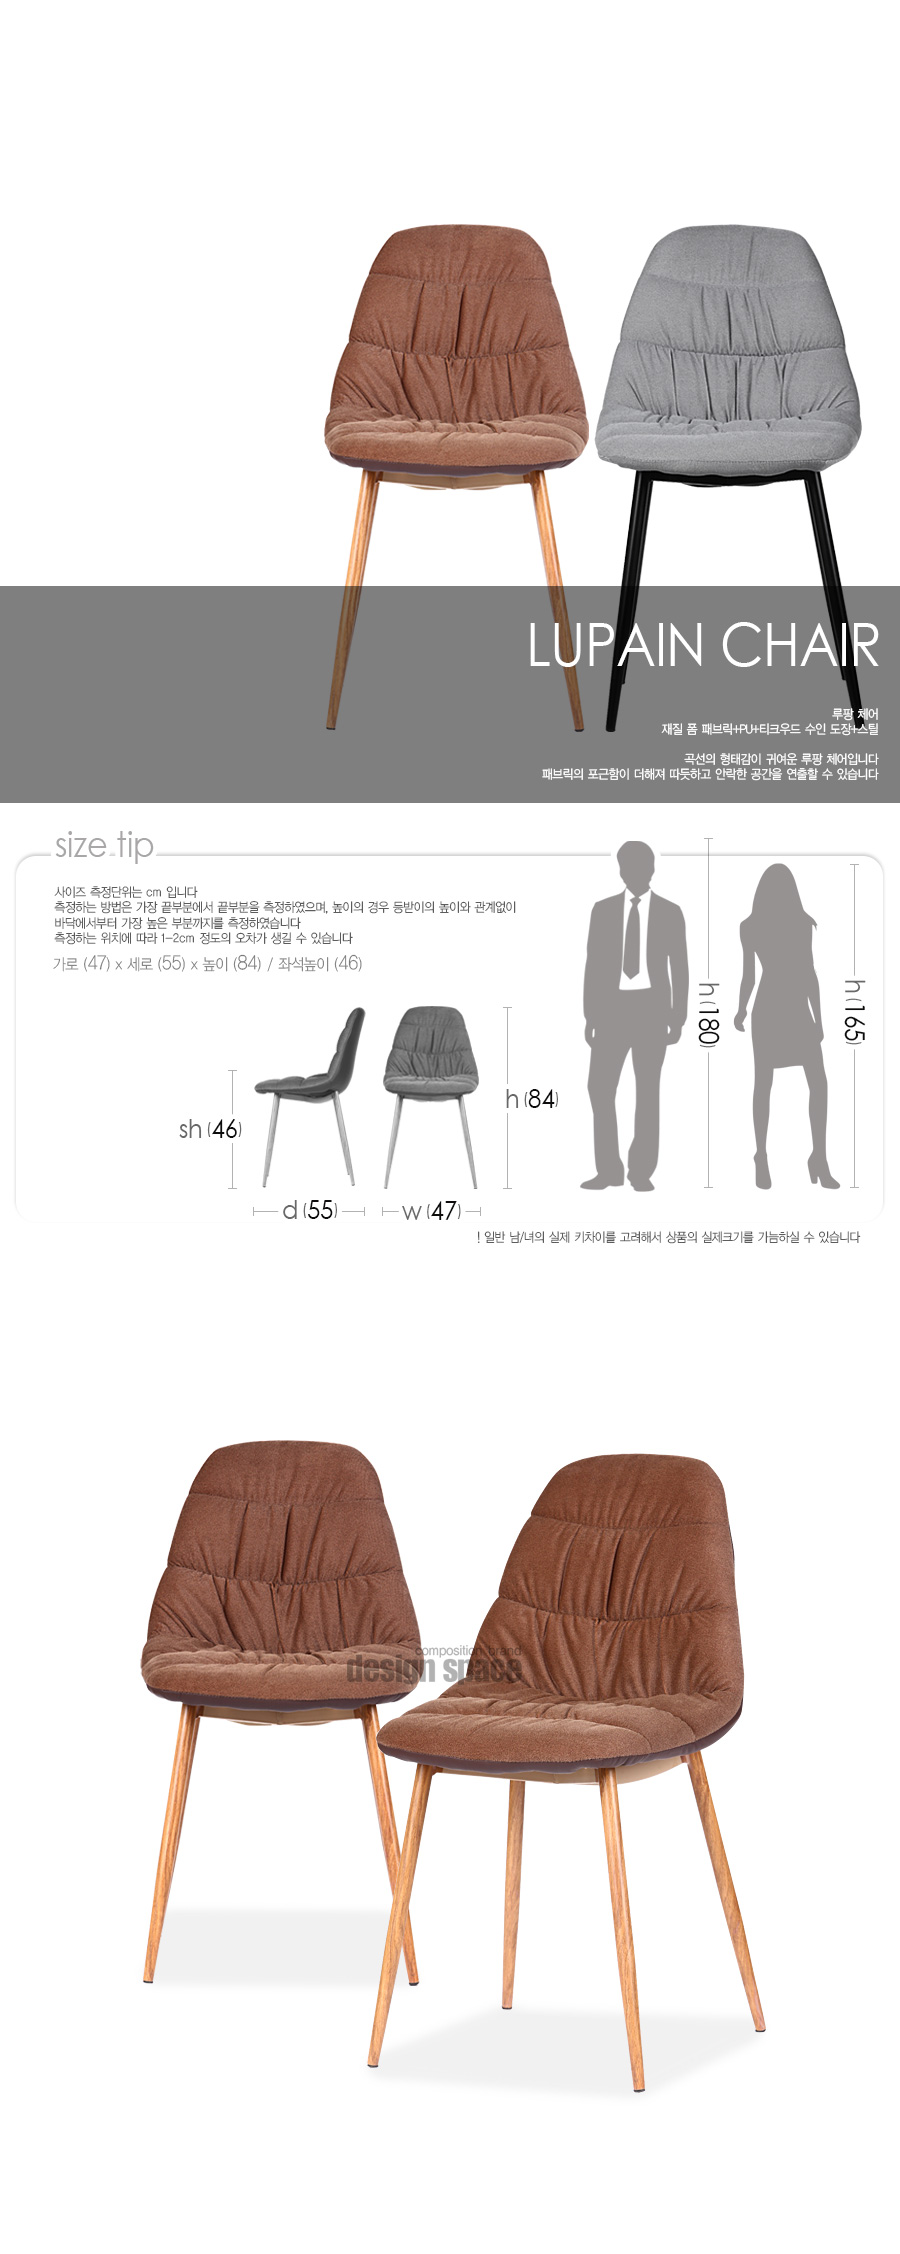 lupain-chair_01.jpg